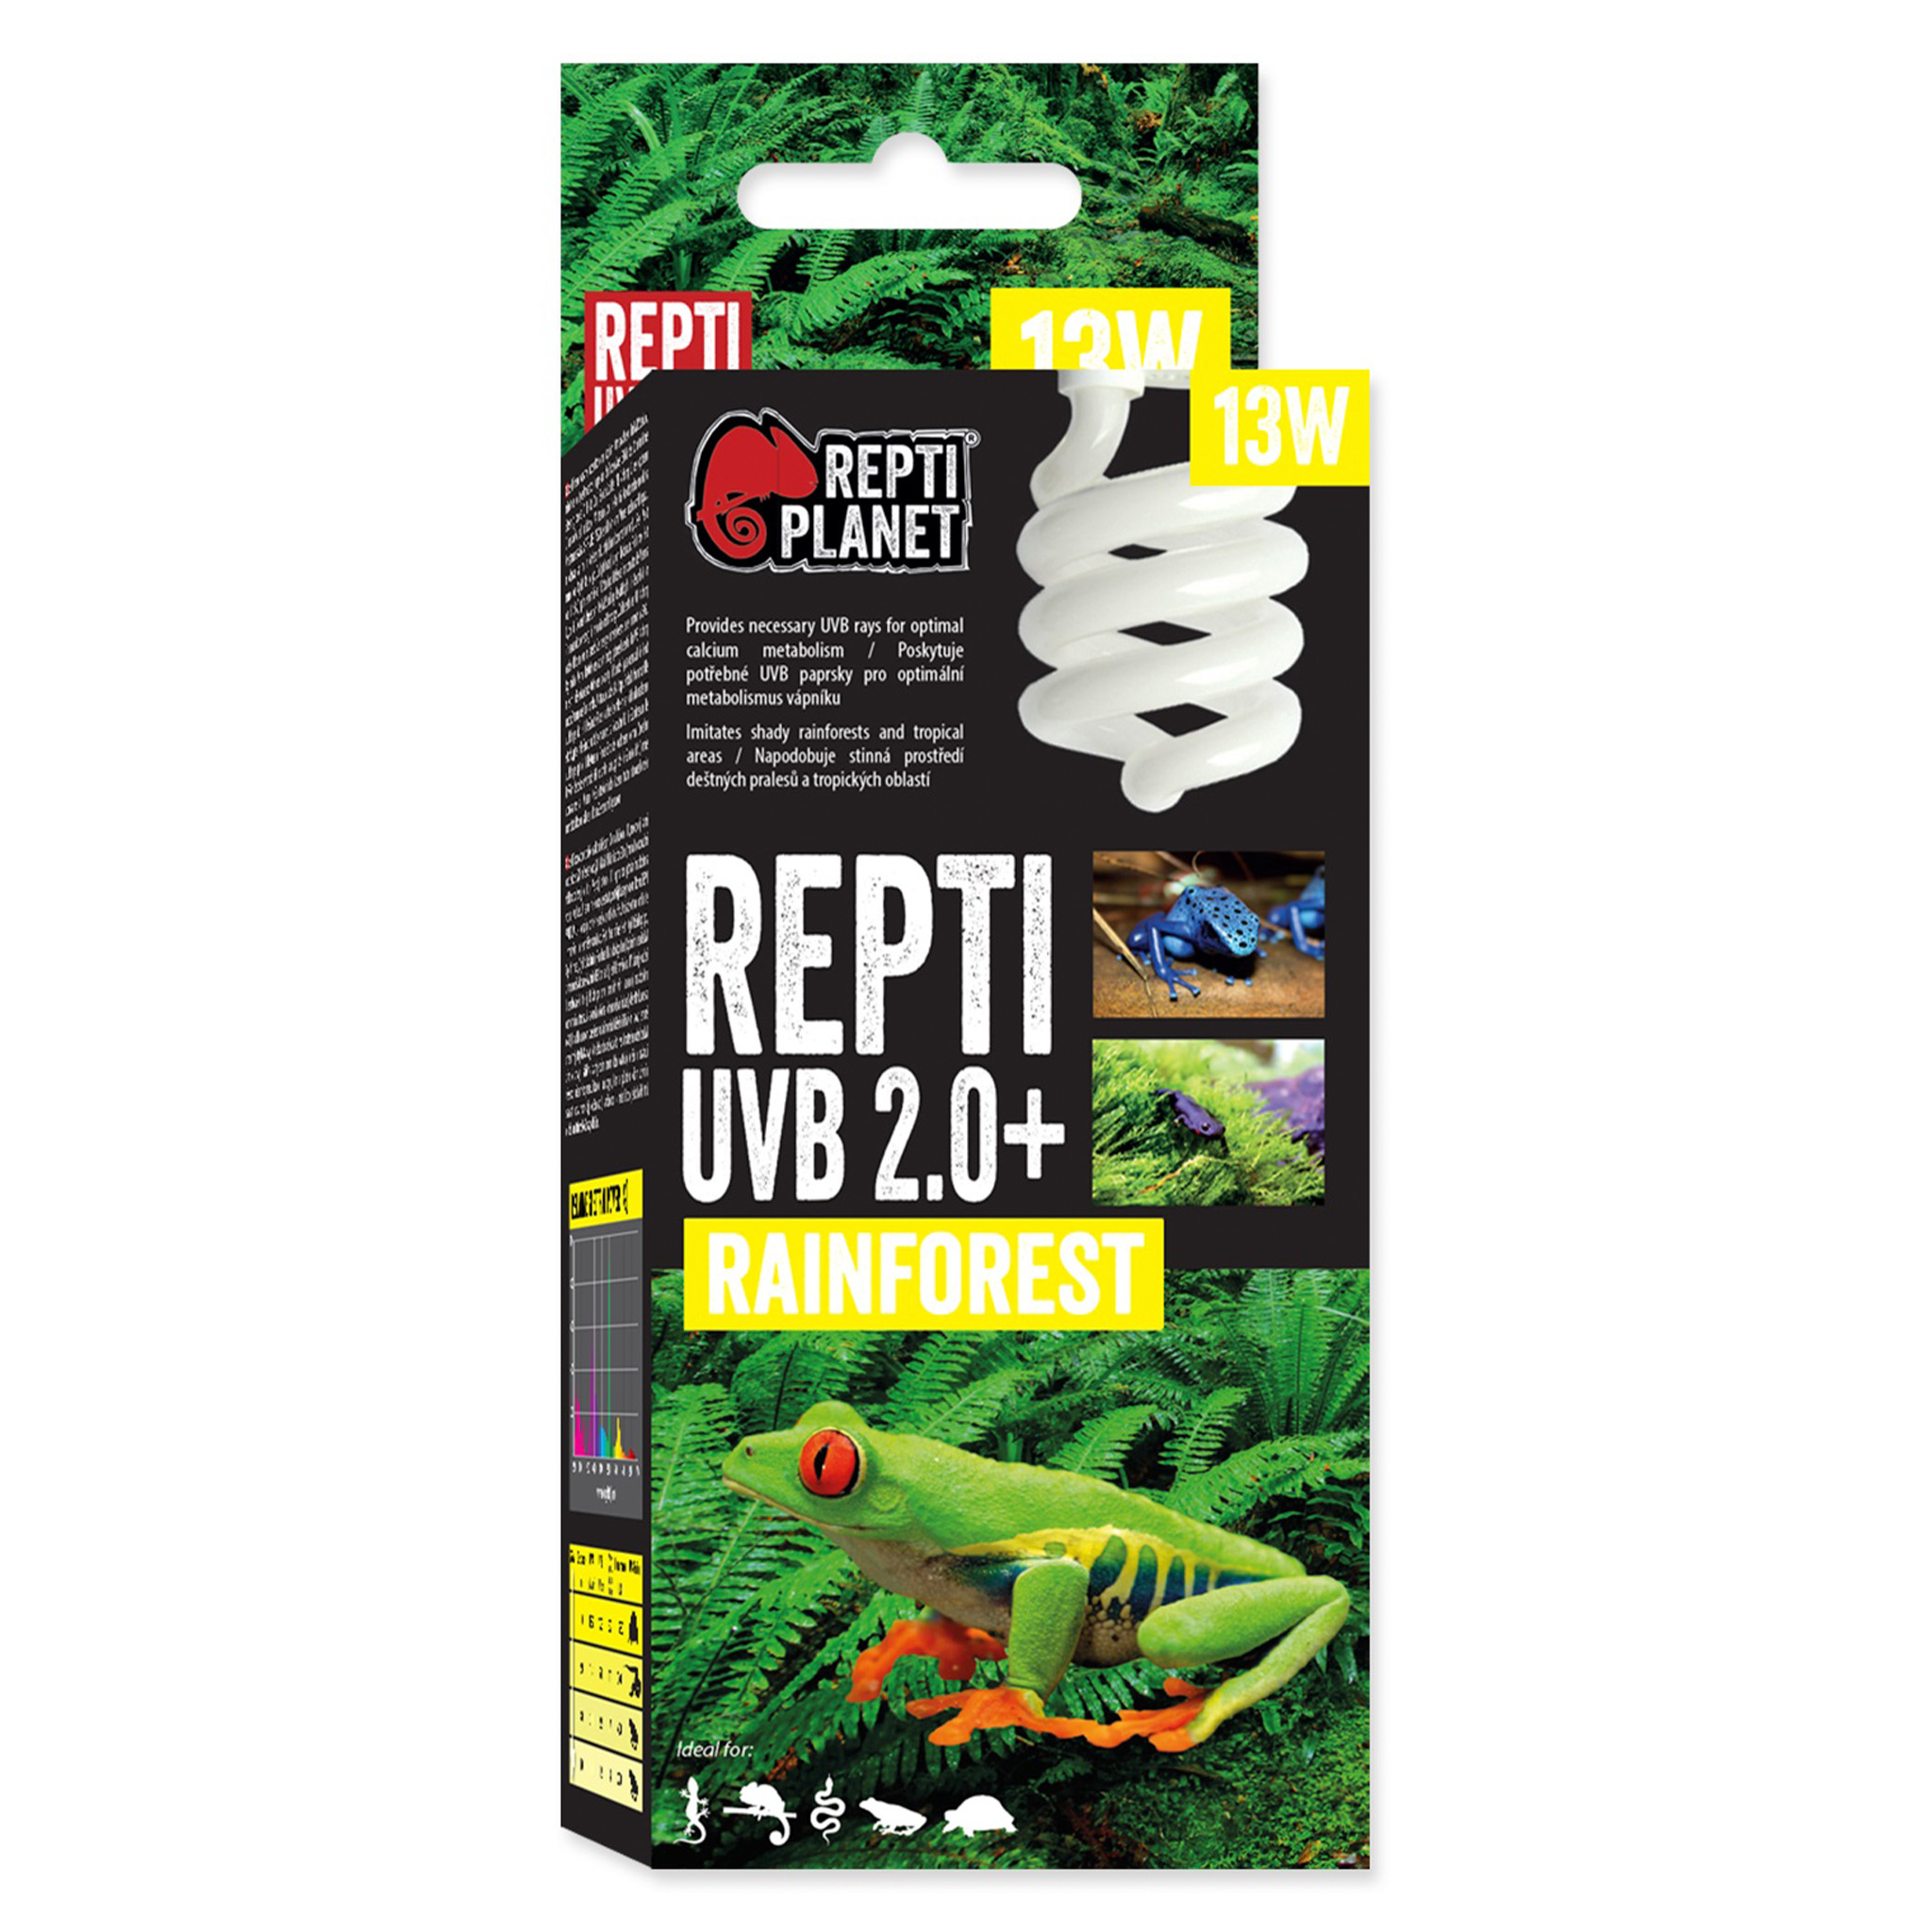 ReptiPlanet UVB 2.0+ Rainforest 13w